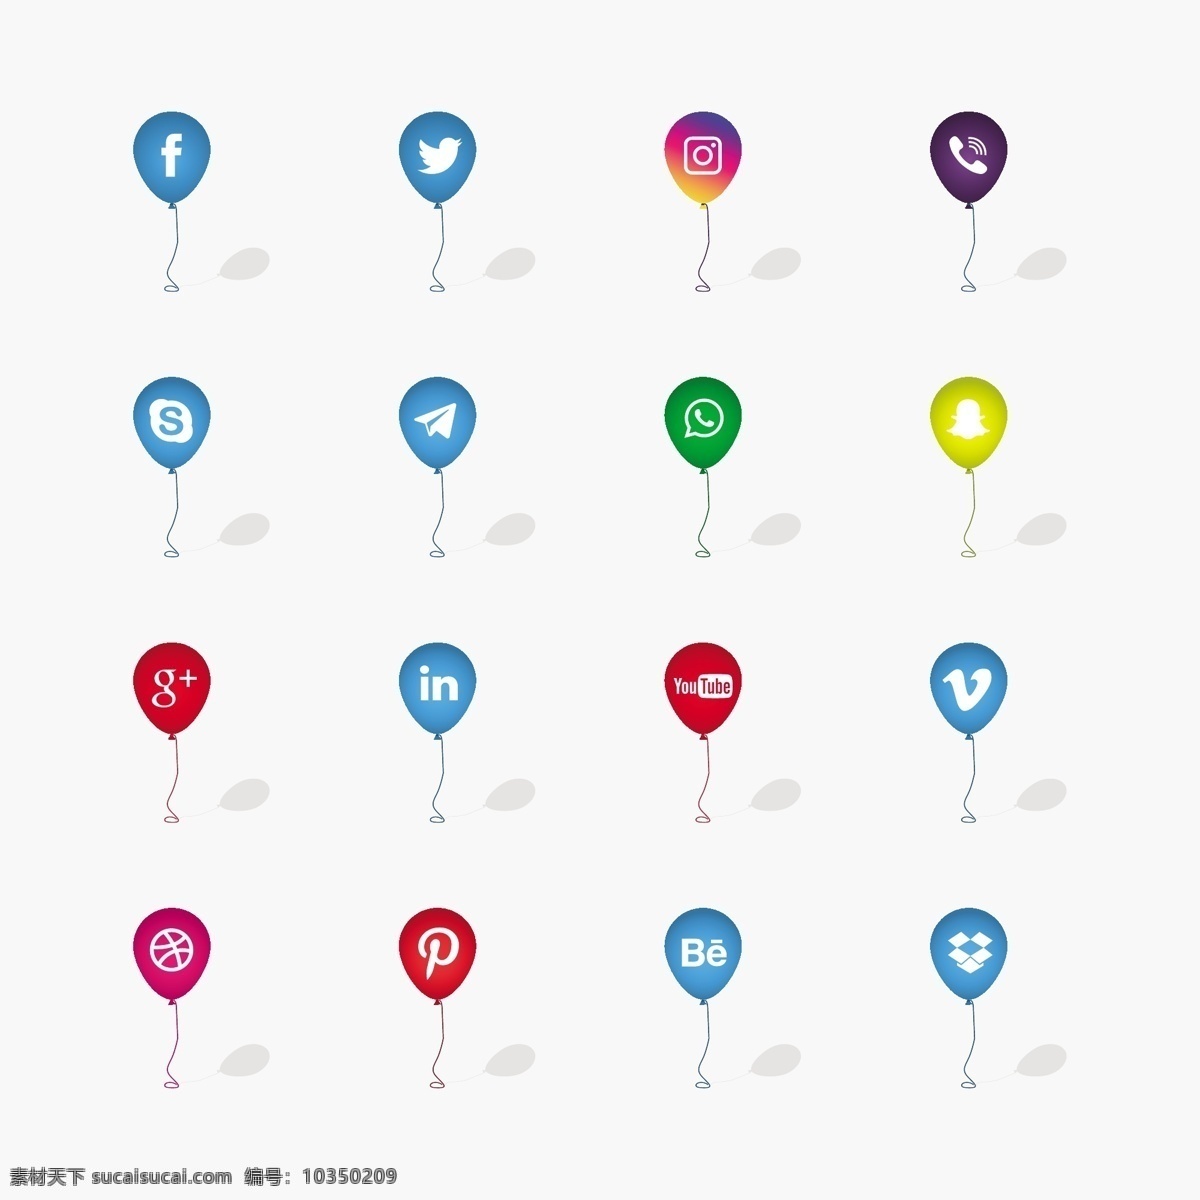 气球 上 社交 网络 图标 背景 技术 脸谱网 社交媒体 按钮 instagram 网页 网站 互联网 社会 喜欢沟通 推特 youtube 简介 媒体